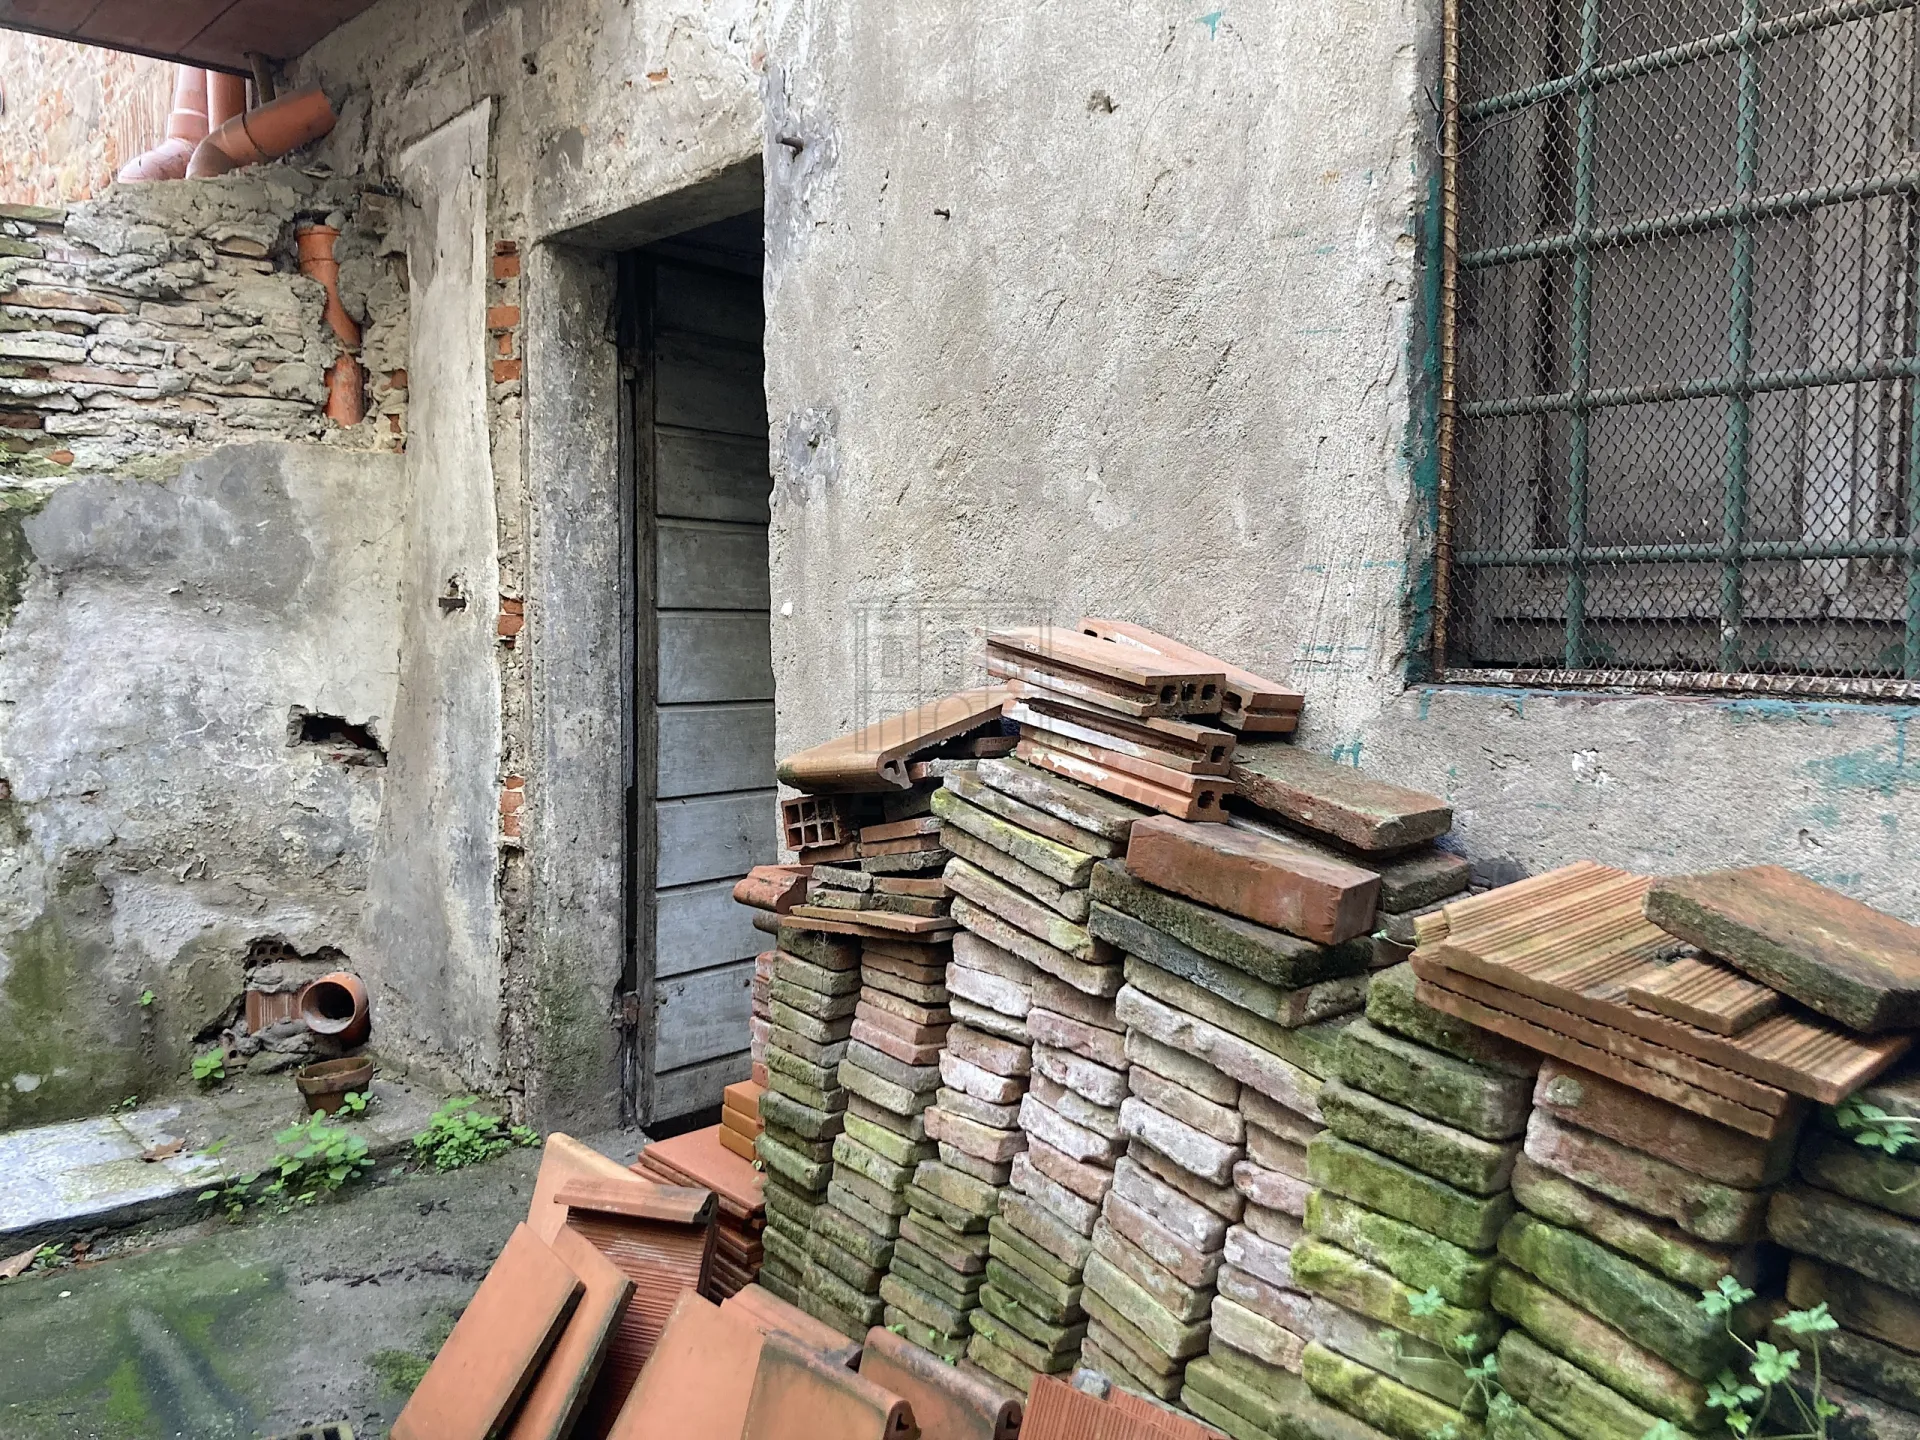 Immagine per Garage Doppio in vendita a Lucca via Del Fosso 182